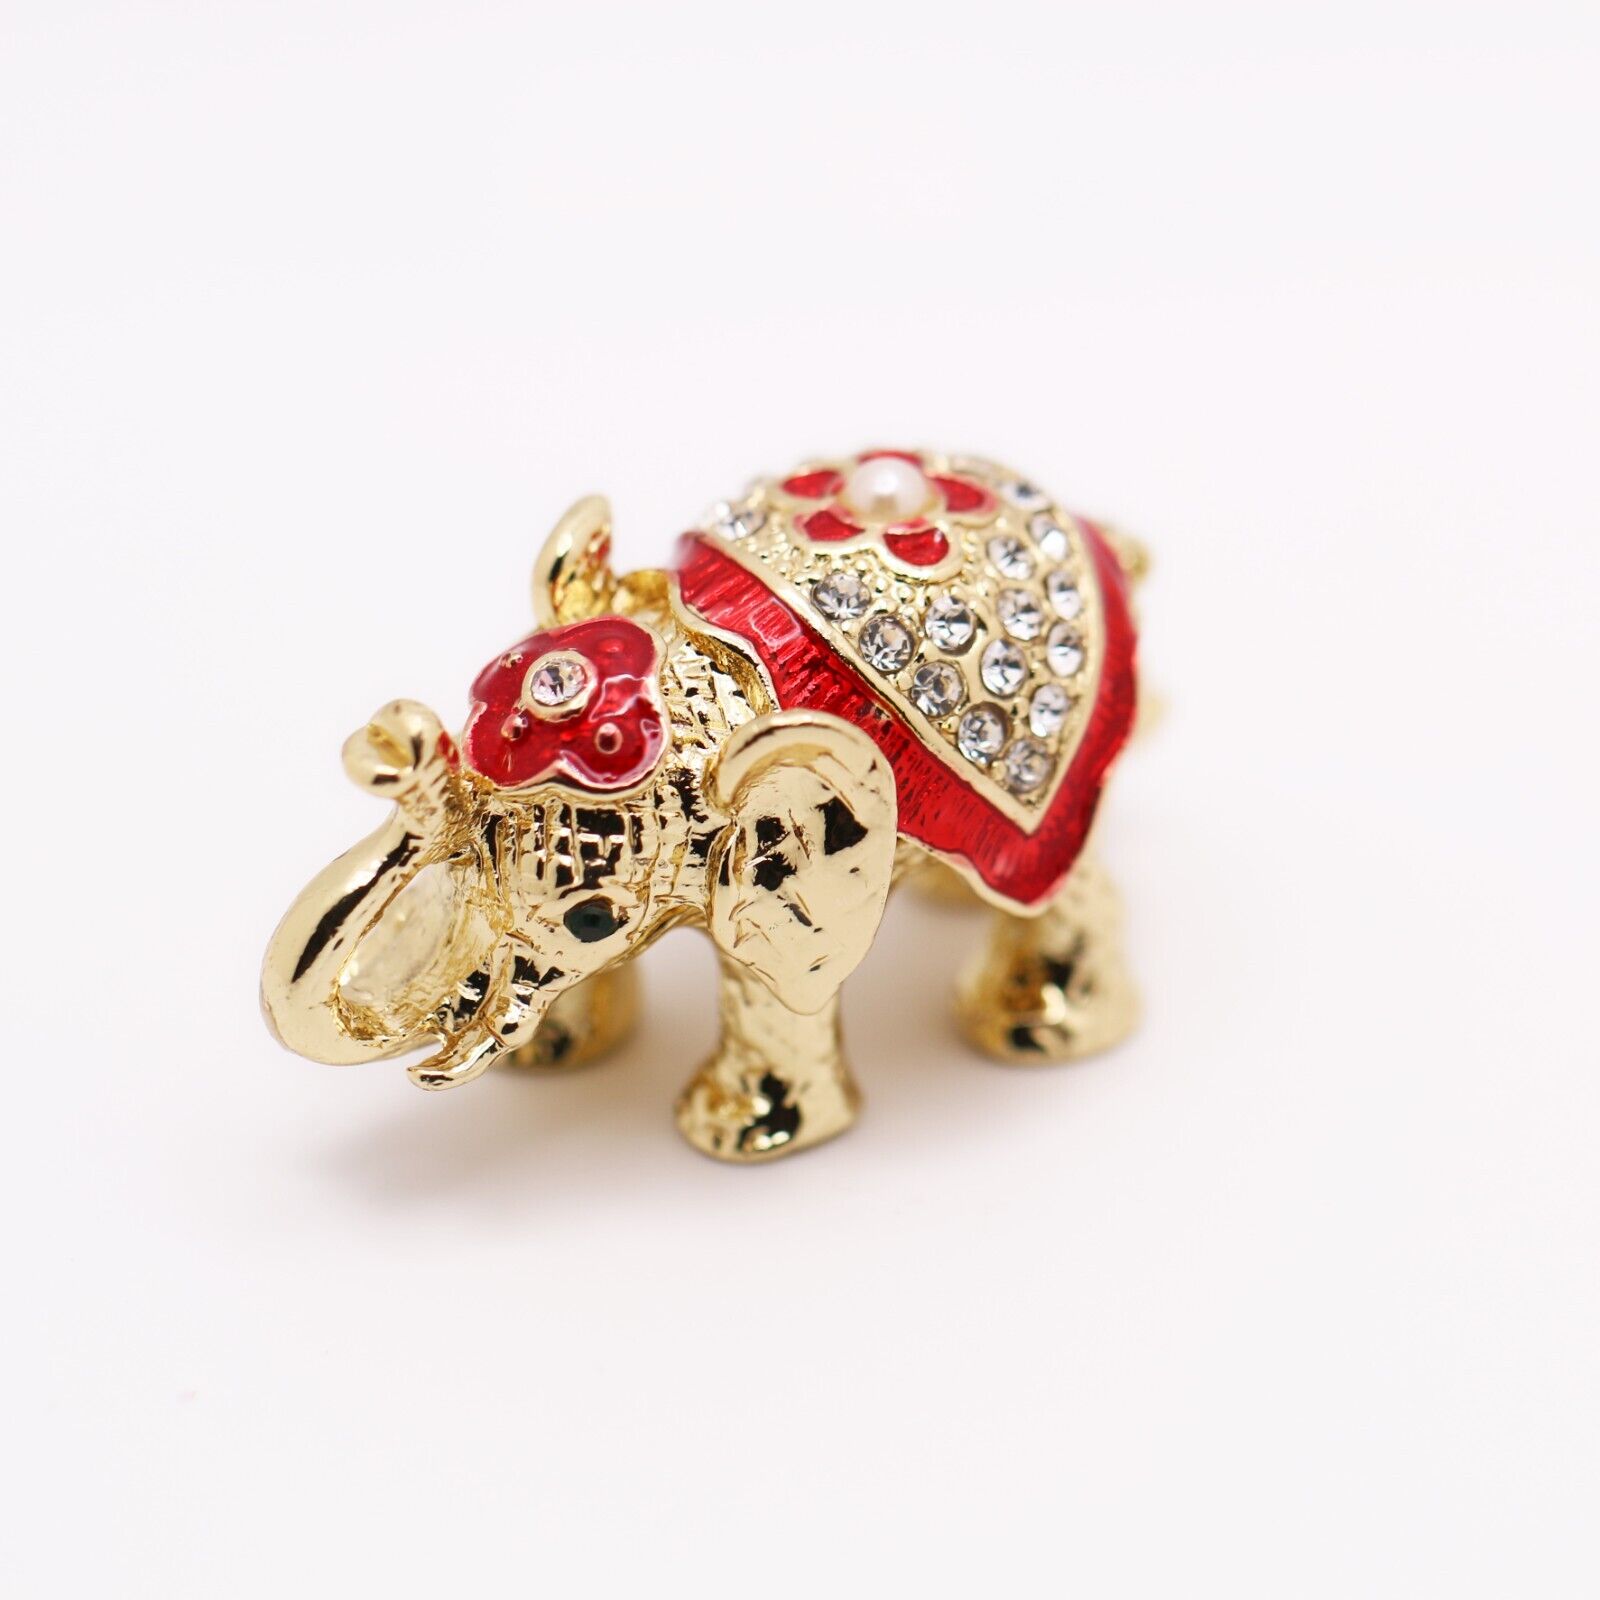 Bejeweled Enameled Animal Trinket Box/Figurine With Rhinestones-Tiny Elephant